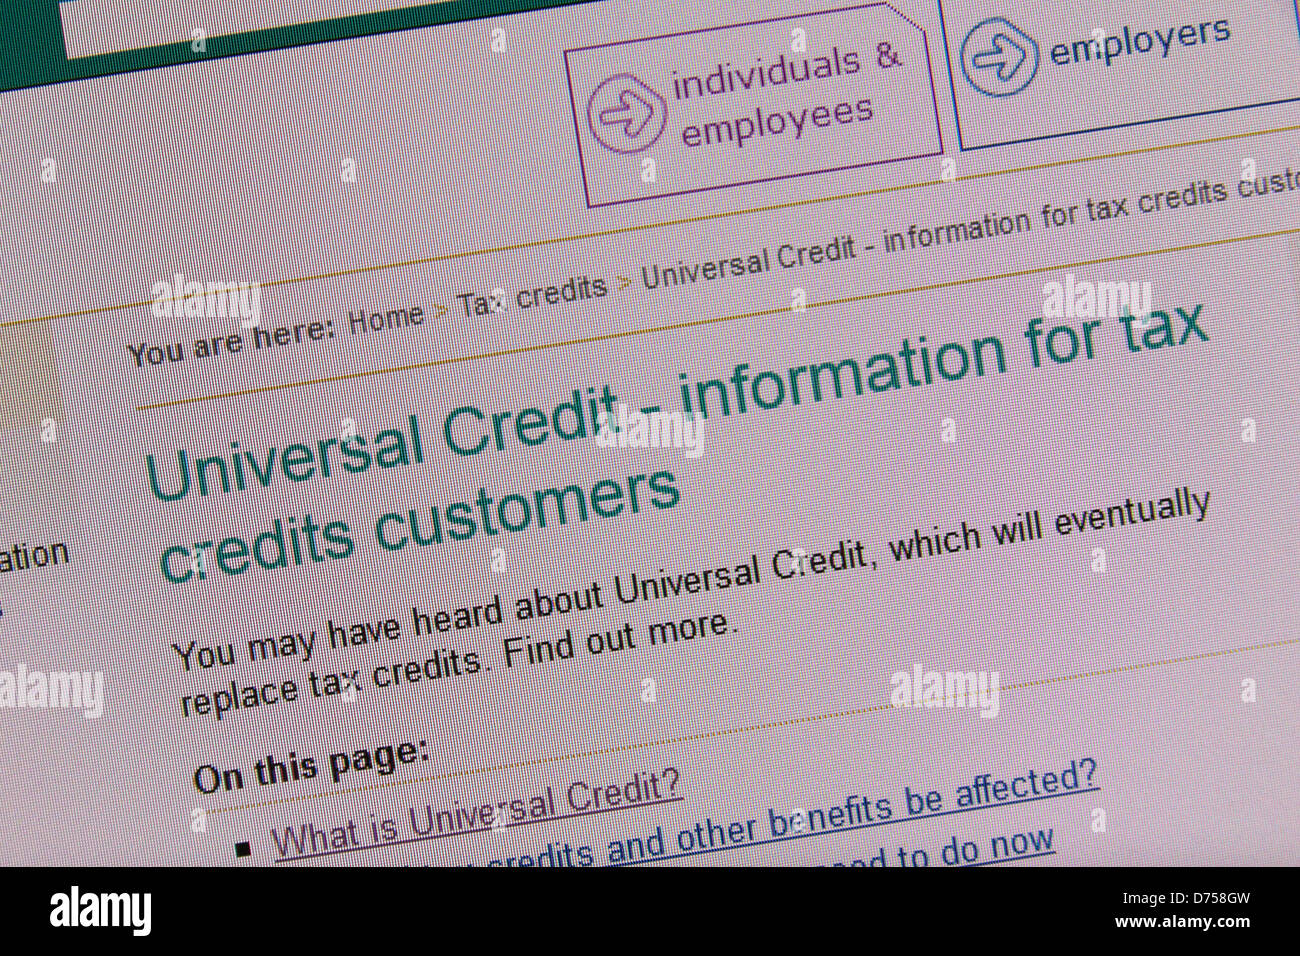 Capture d'écran d'une page de site web de HMRC pour le nouveau crédit universel (déploiement a commencé 29 avril 2013), introduit pour remplacer plusieurs avantages actuels. Banque D'Images